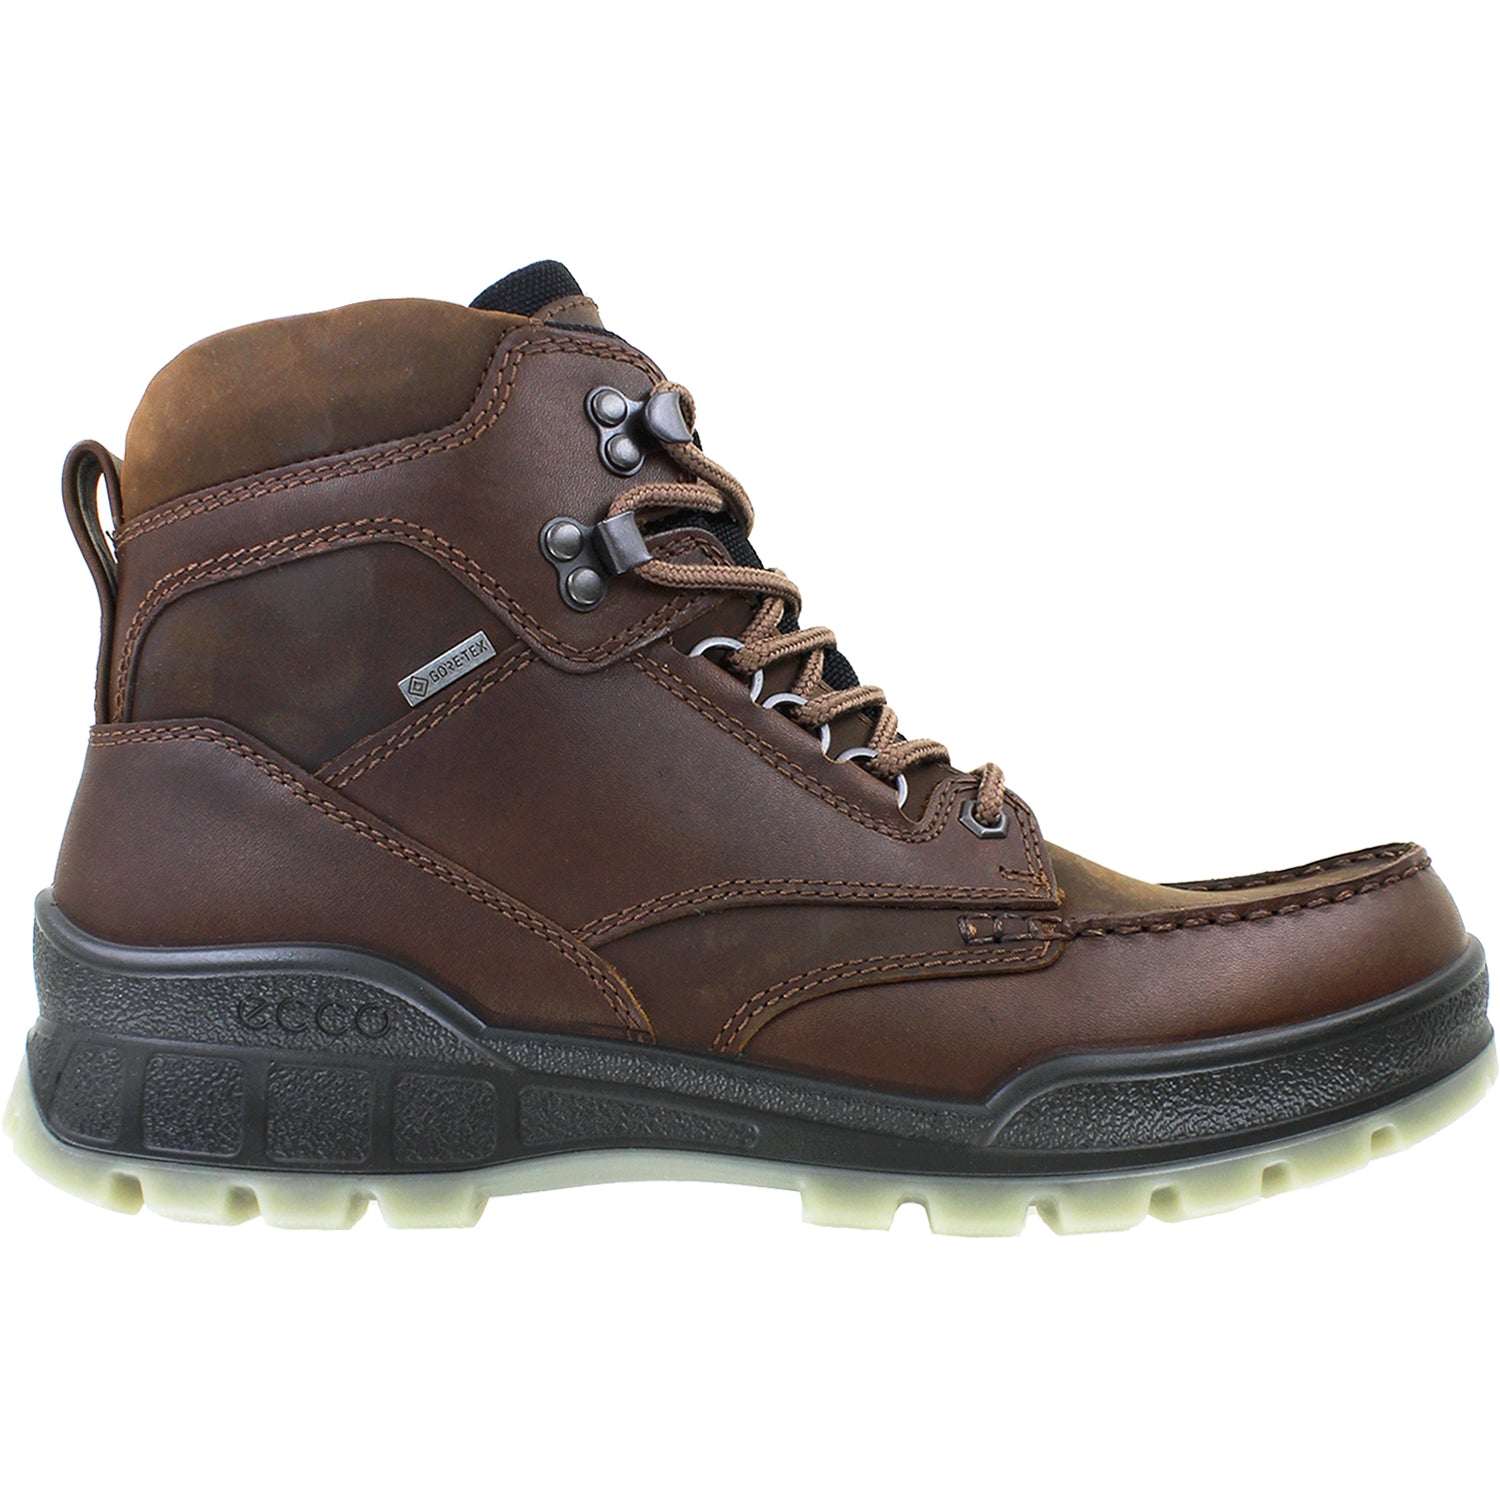 skrive Afgang bundt Ecco Track 25 High GTX Bison | Men's Hiking Boots | Footwear etc.